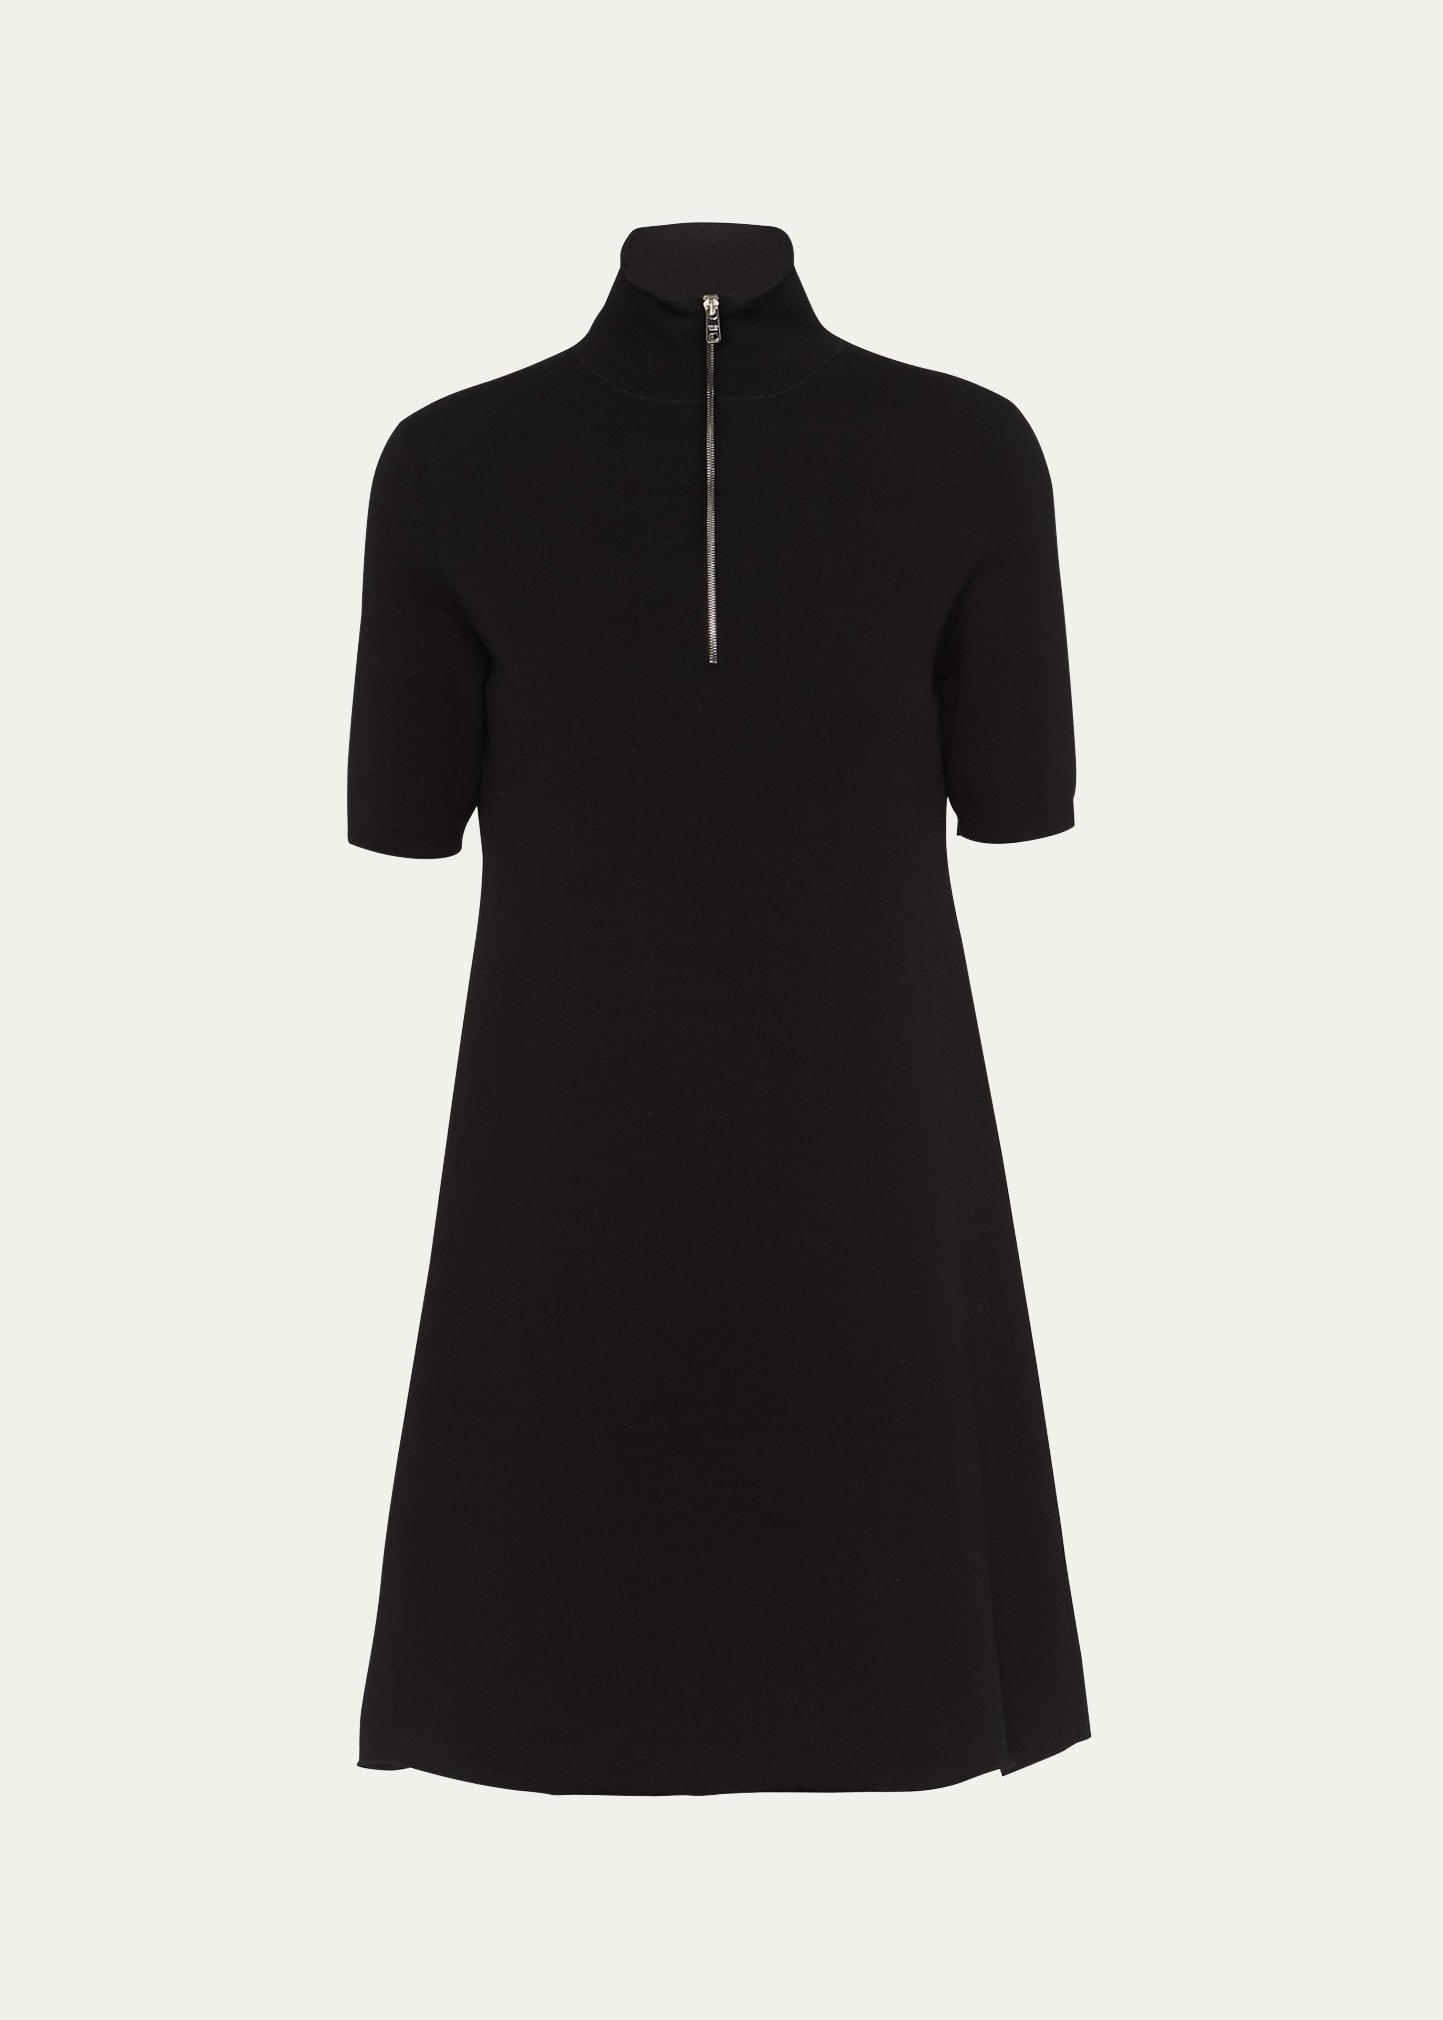 Prada Wool And Viscose Dress In Black